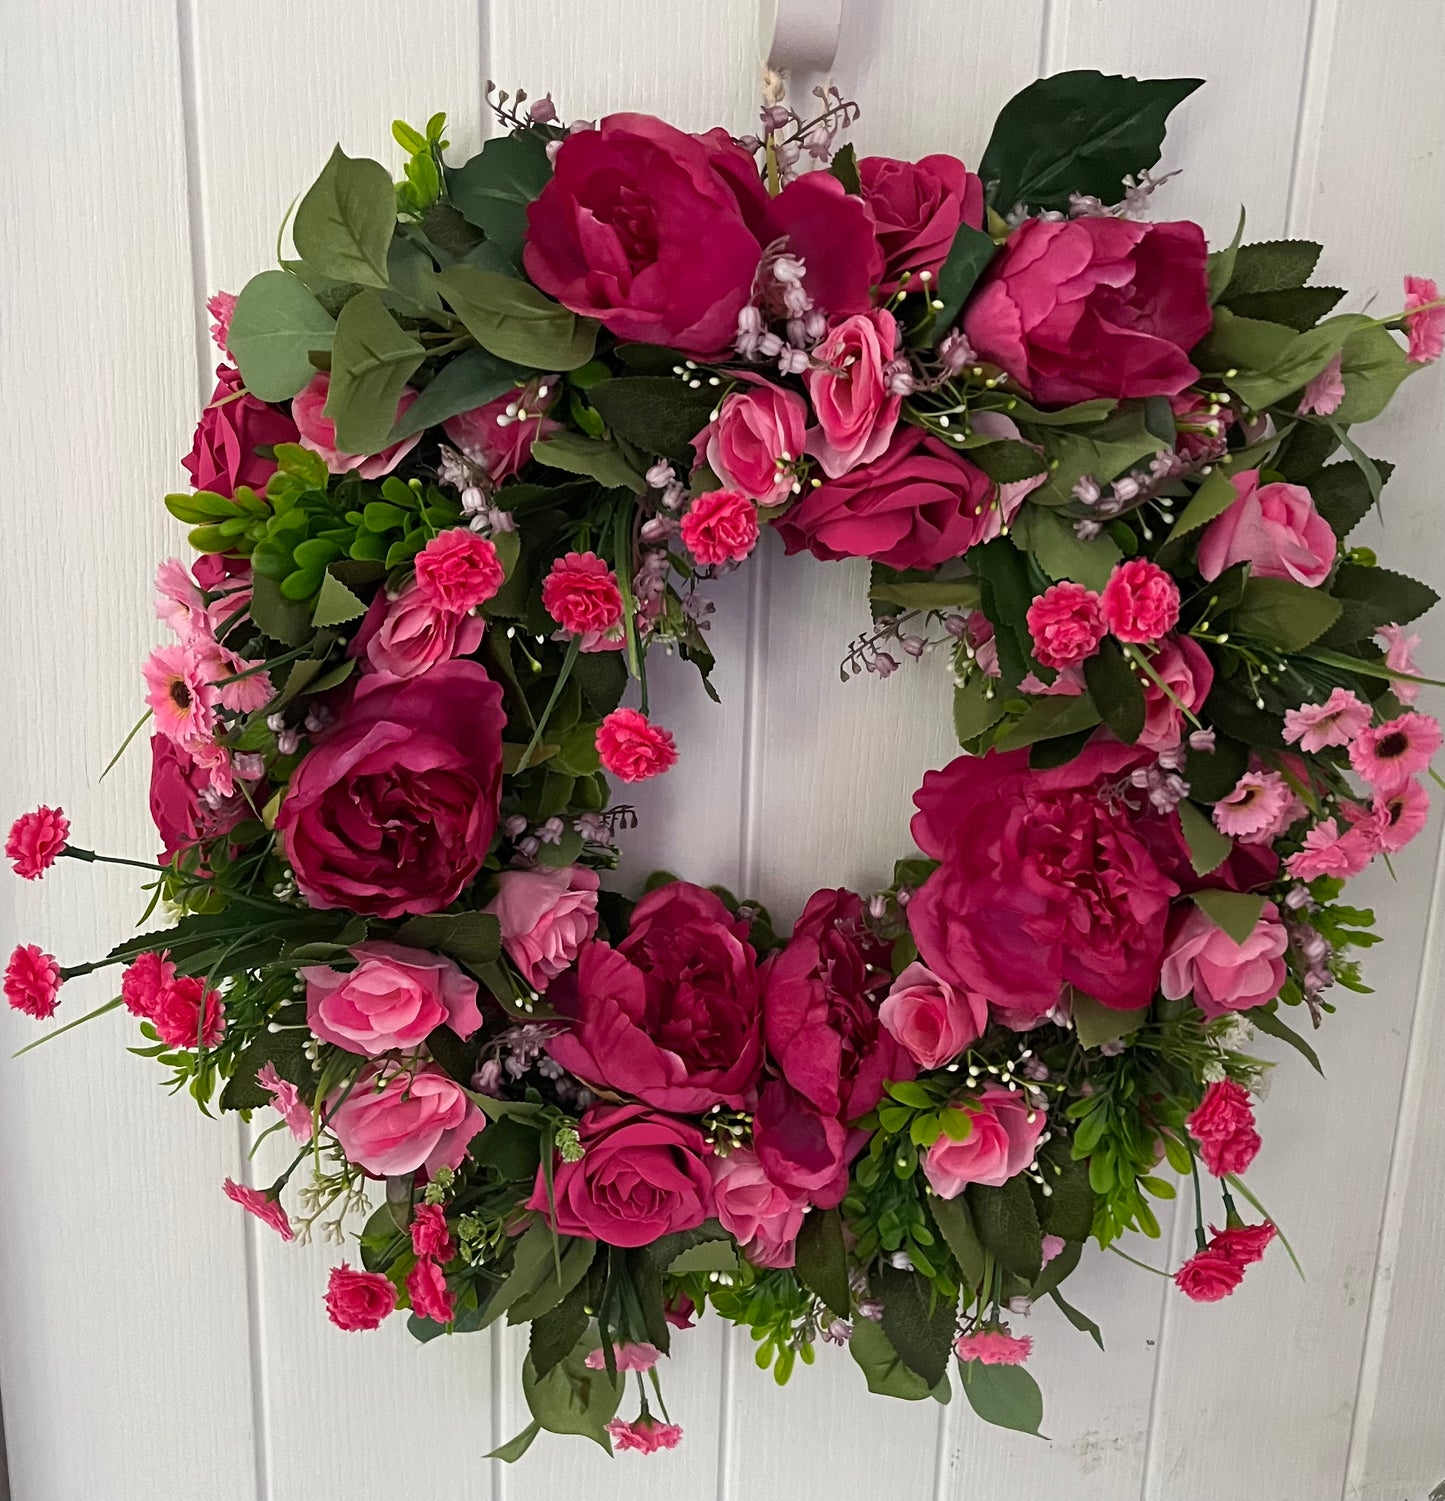 Large Double Pink Door Wreath